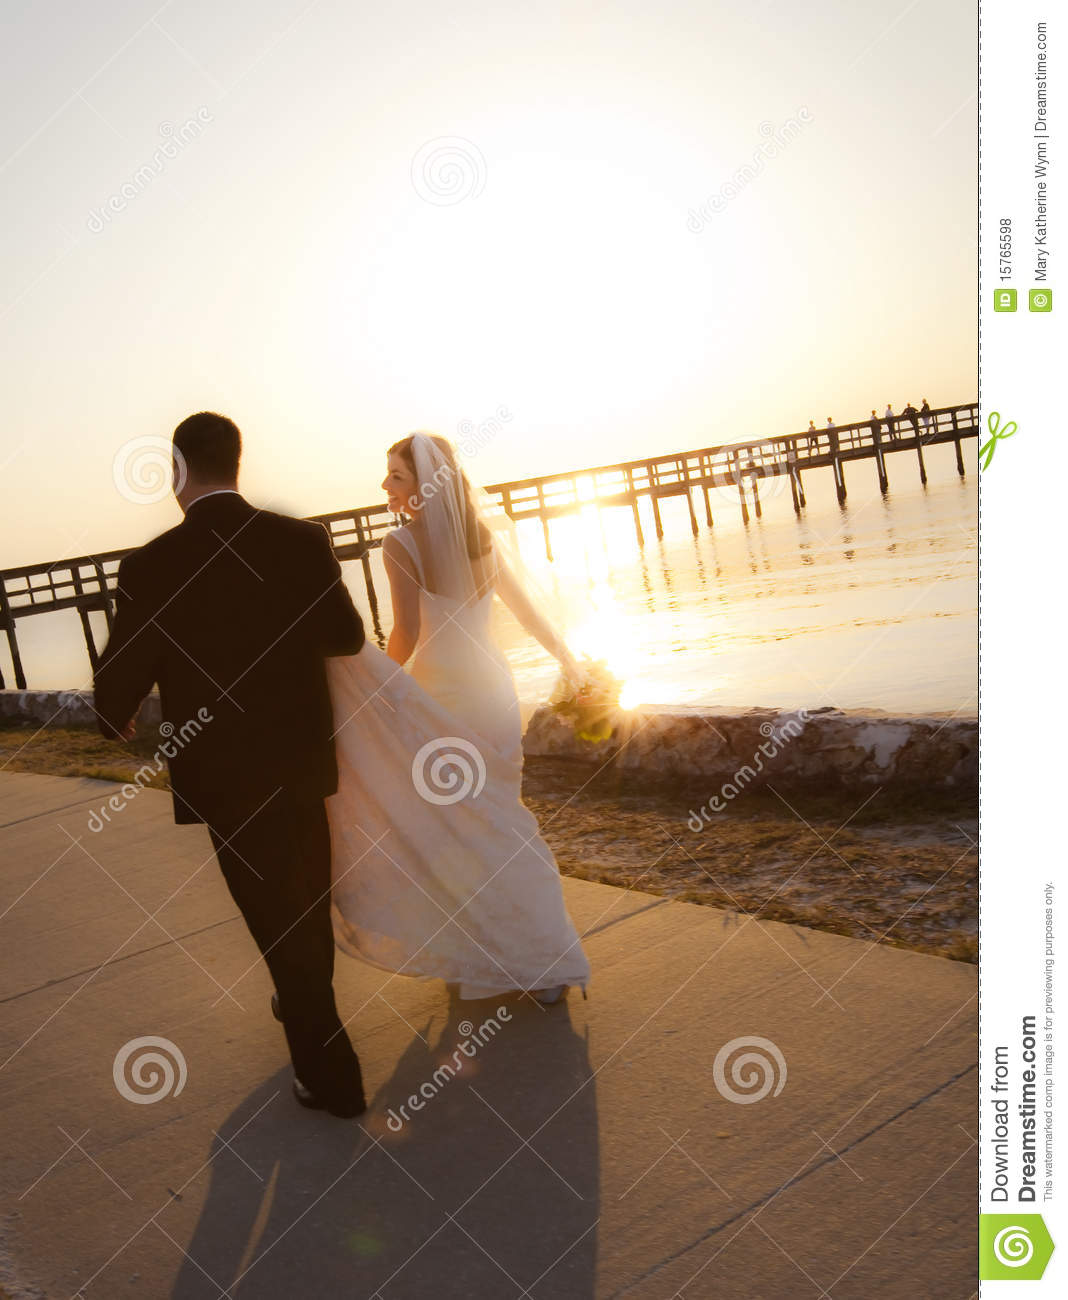 Wedding Couple Walking into Sunset